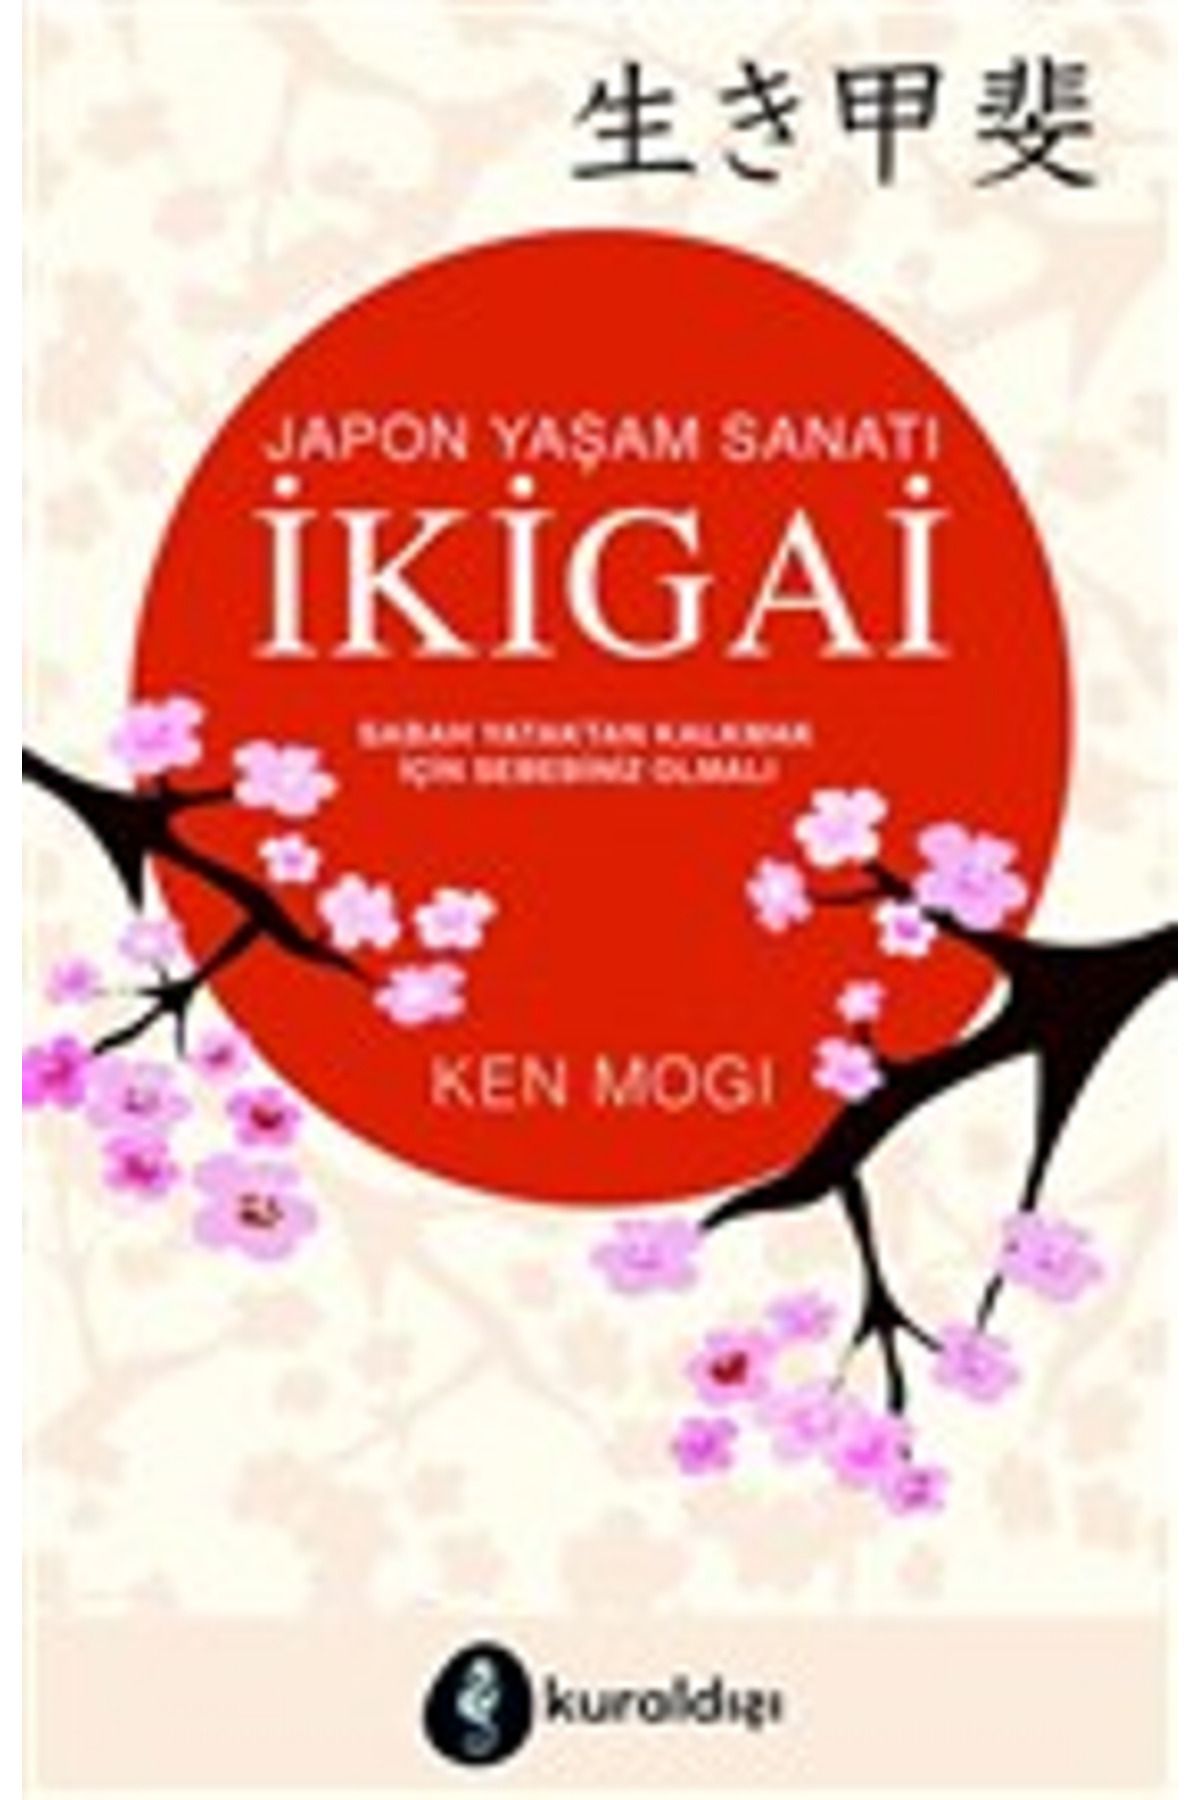 Genel Markalar Japon Yaşam Sanatı Ikigai (SABAH YATAKTAN KALKMAK IÇİN SEBEBİNİZ OLMALI)